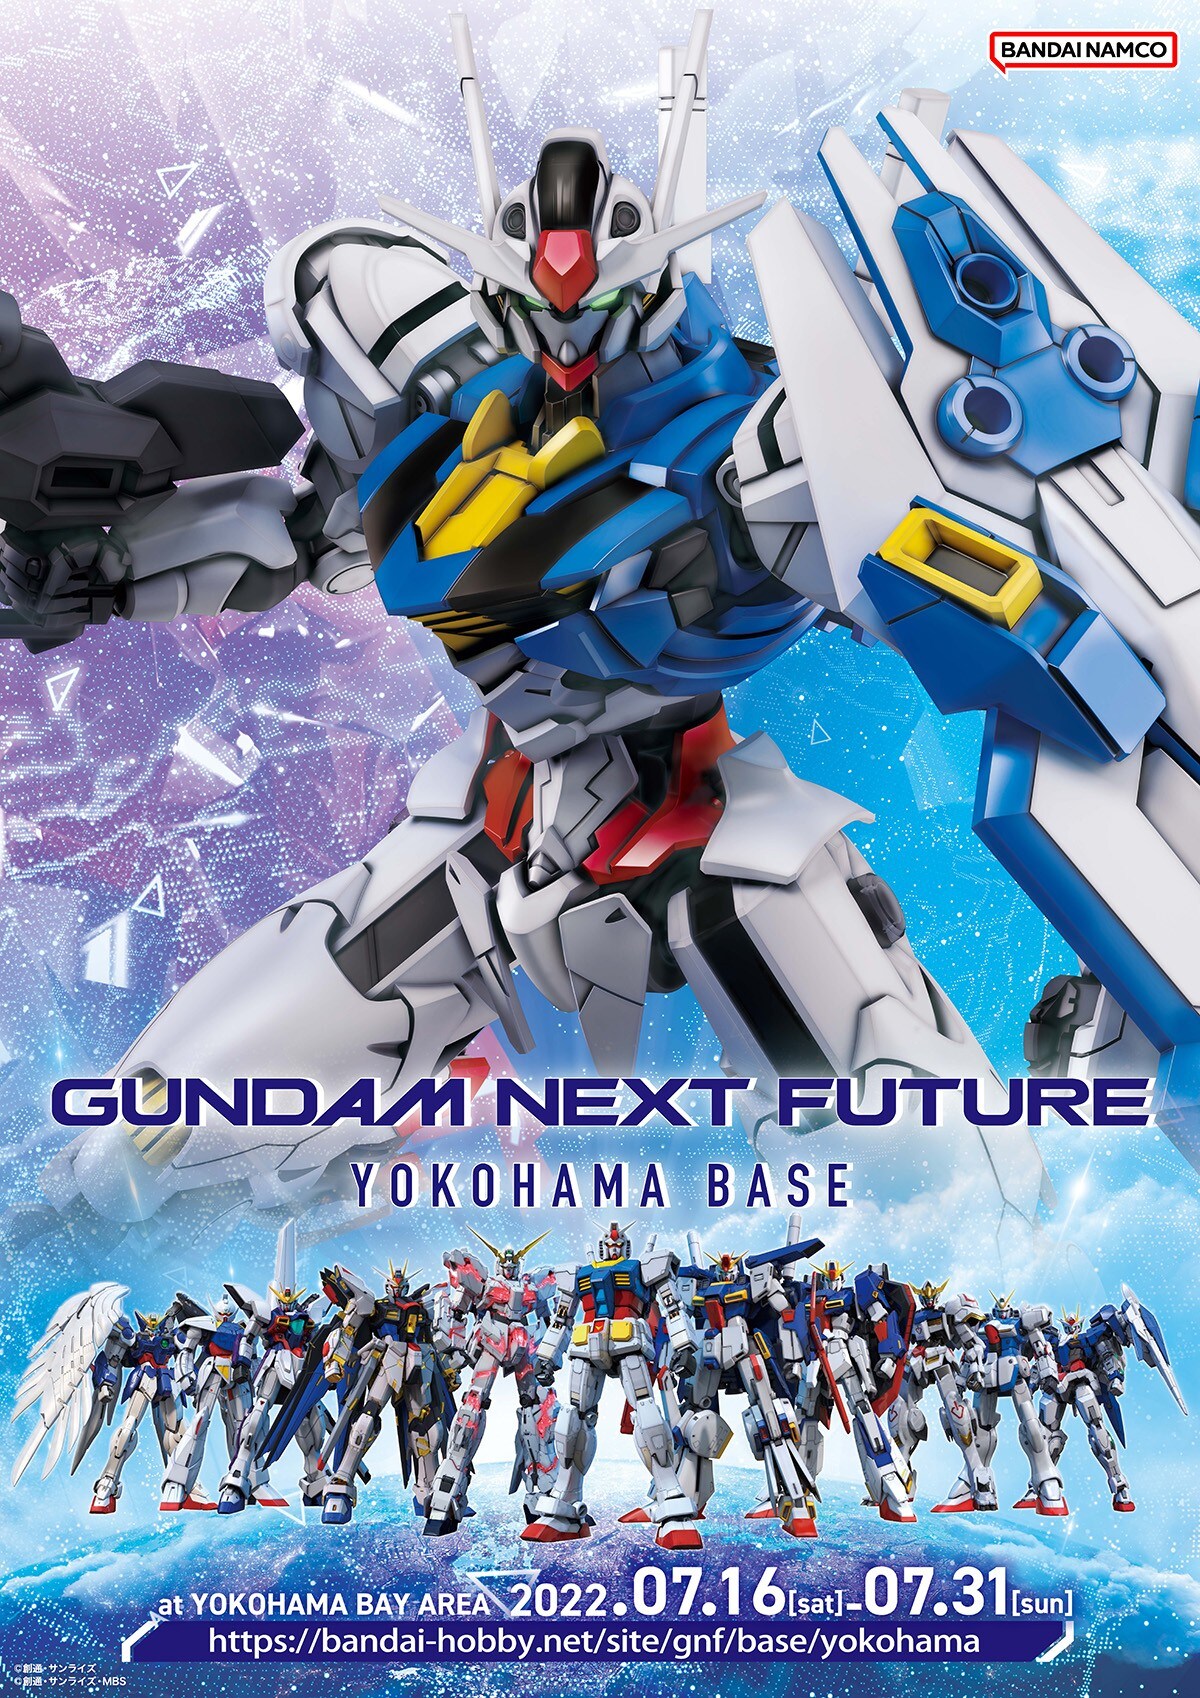 GUNDAM NEXT FUTURE YOKOHAMA BASE キービジュアル